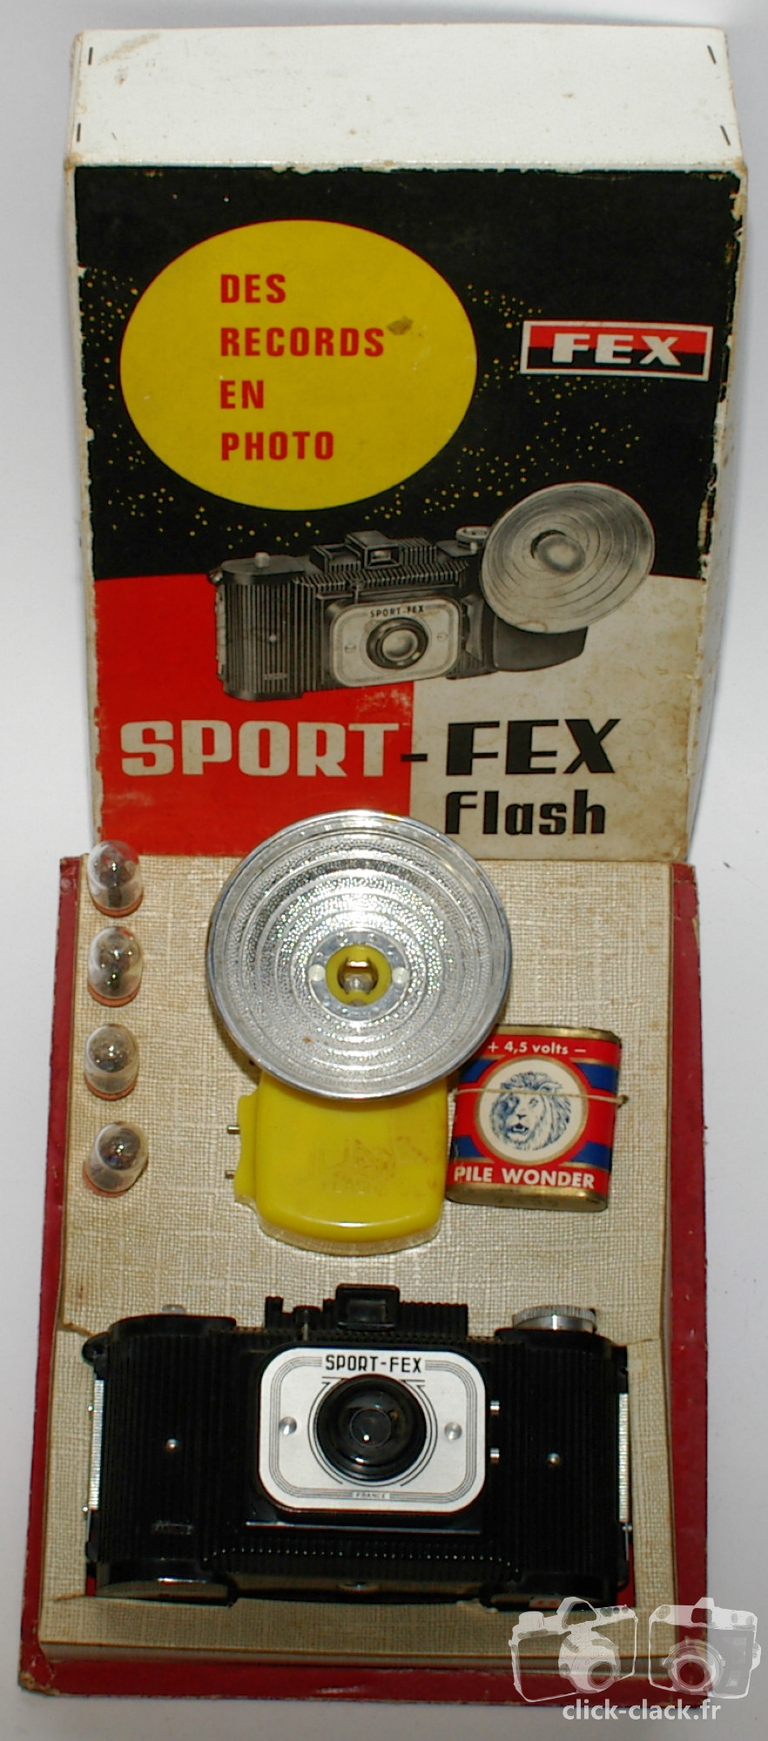 Fex-Indo - Autre présentation du coffret Sport-Fex avec son flash jaune